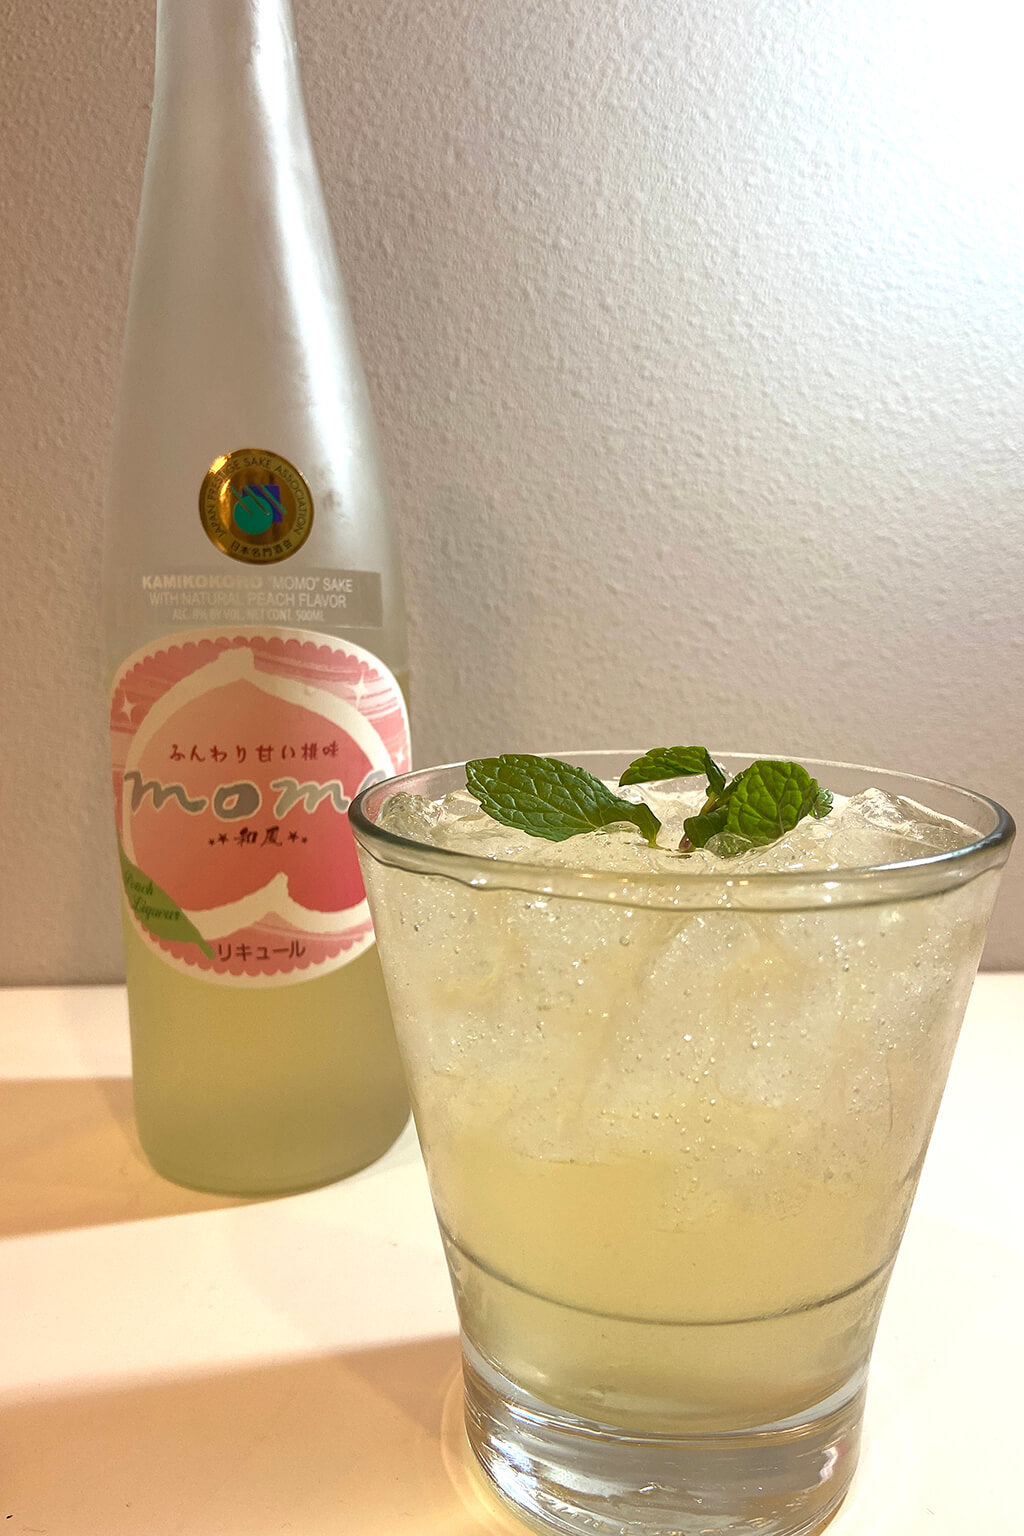 Sake cocktail: Momo cocktail.